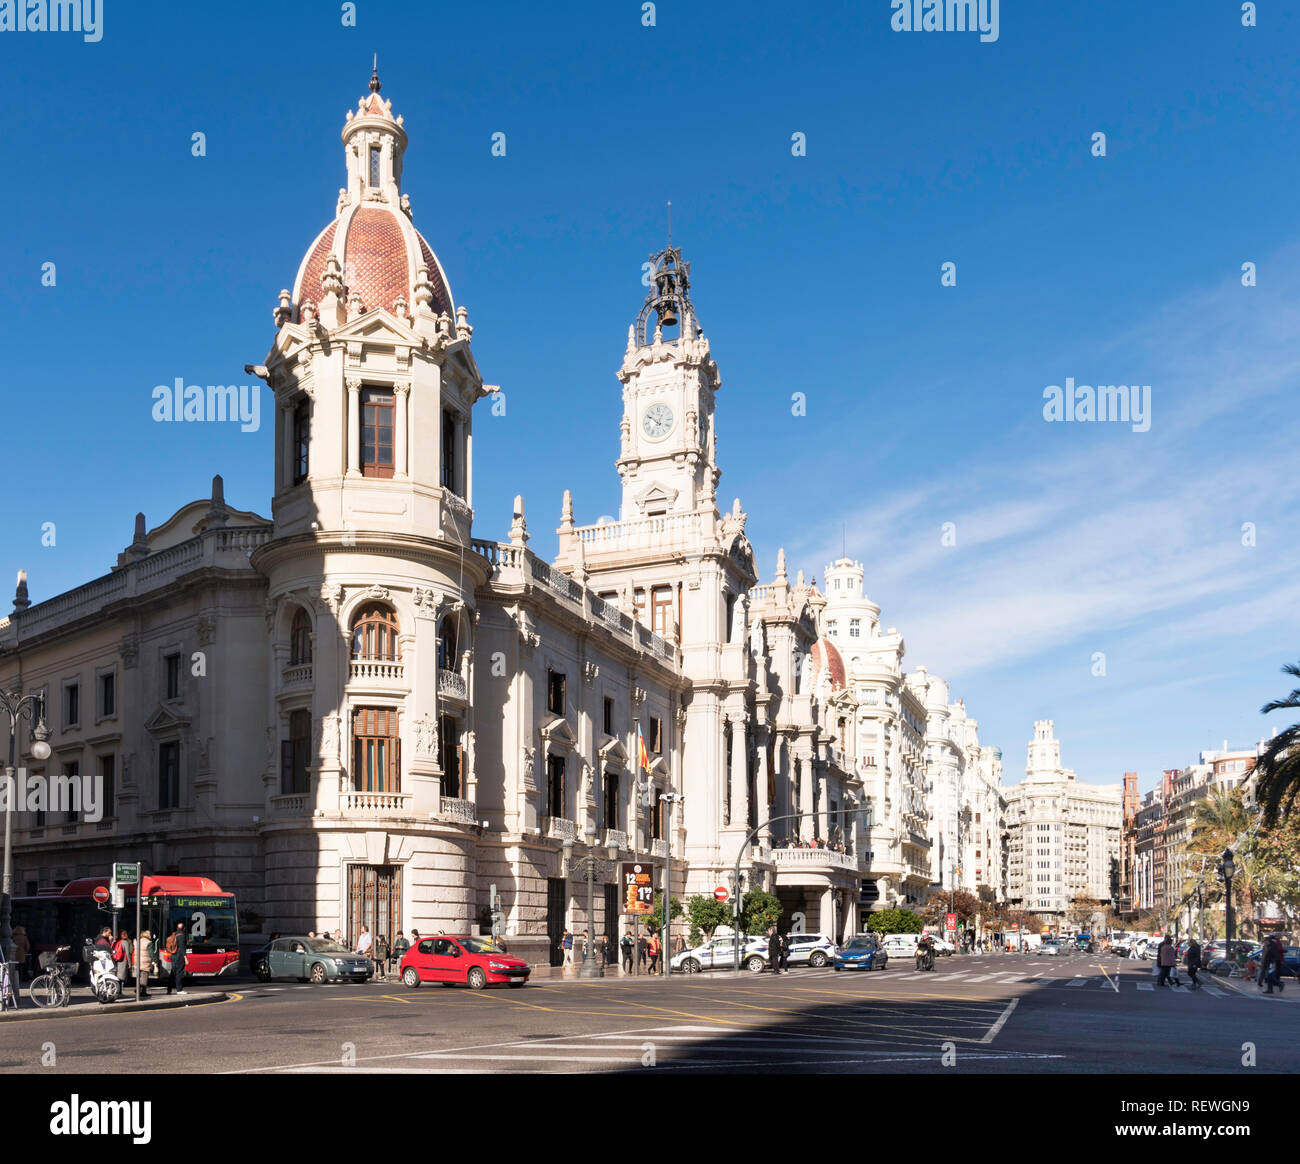 Le centre-ville de Valence et de la mairie, de l'Espagne, Europe Banque D'Images